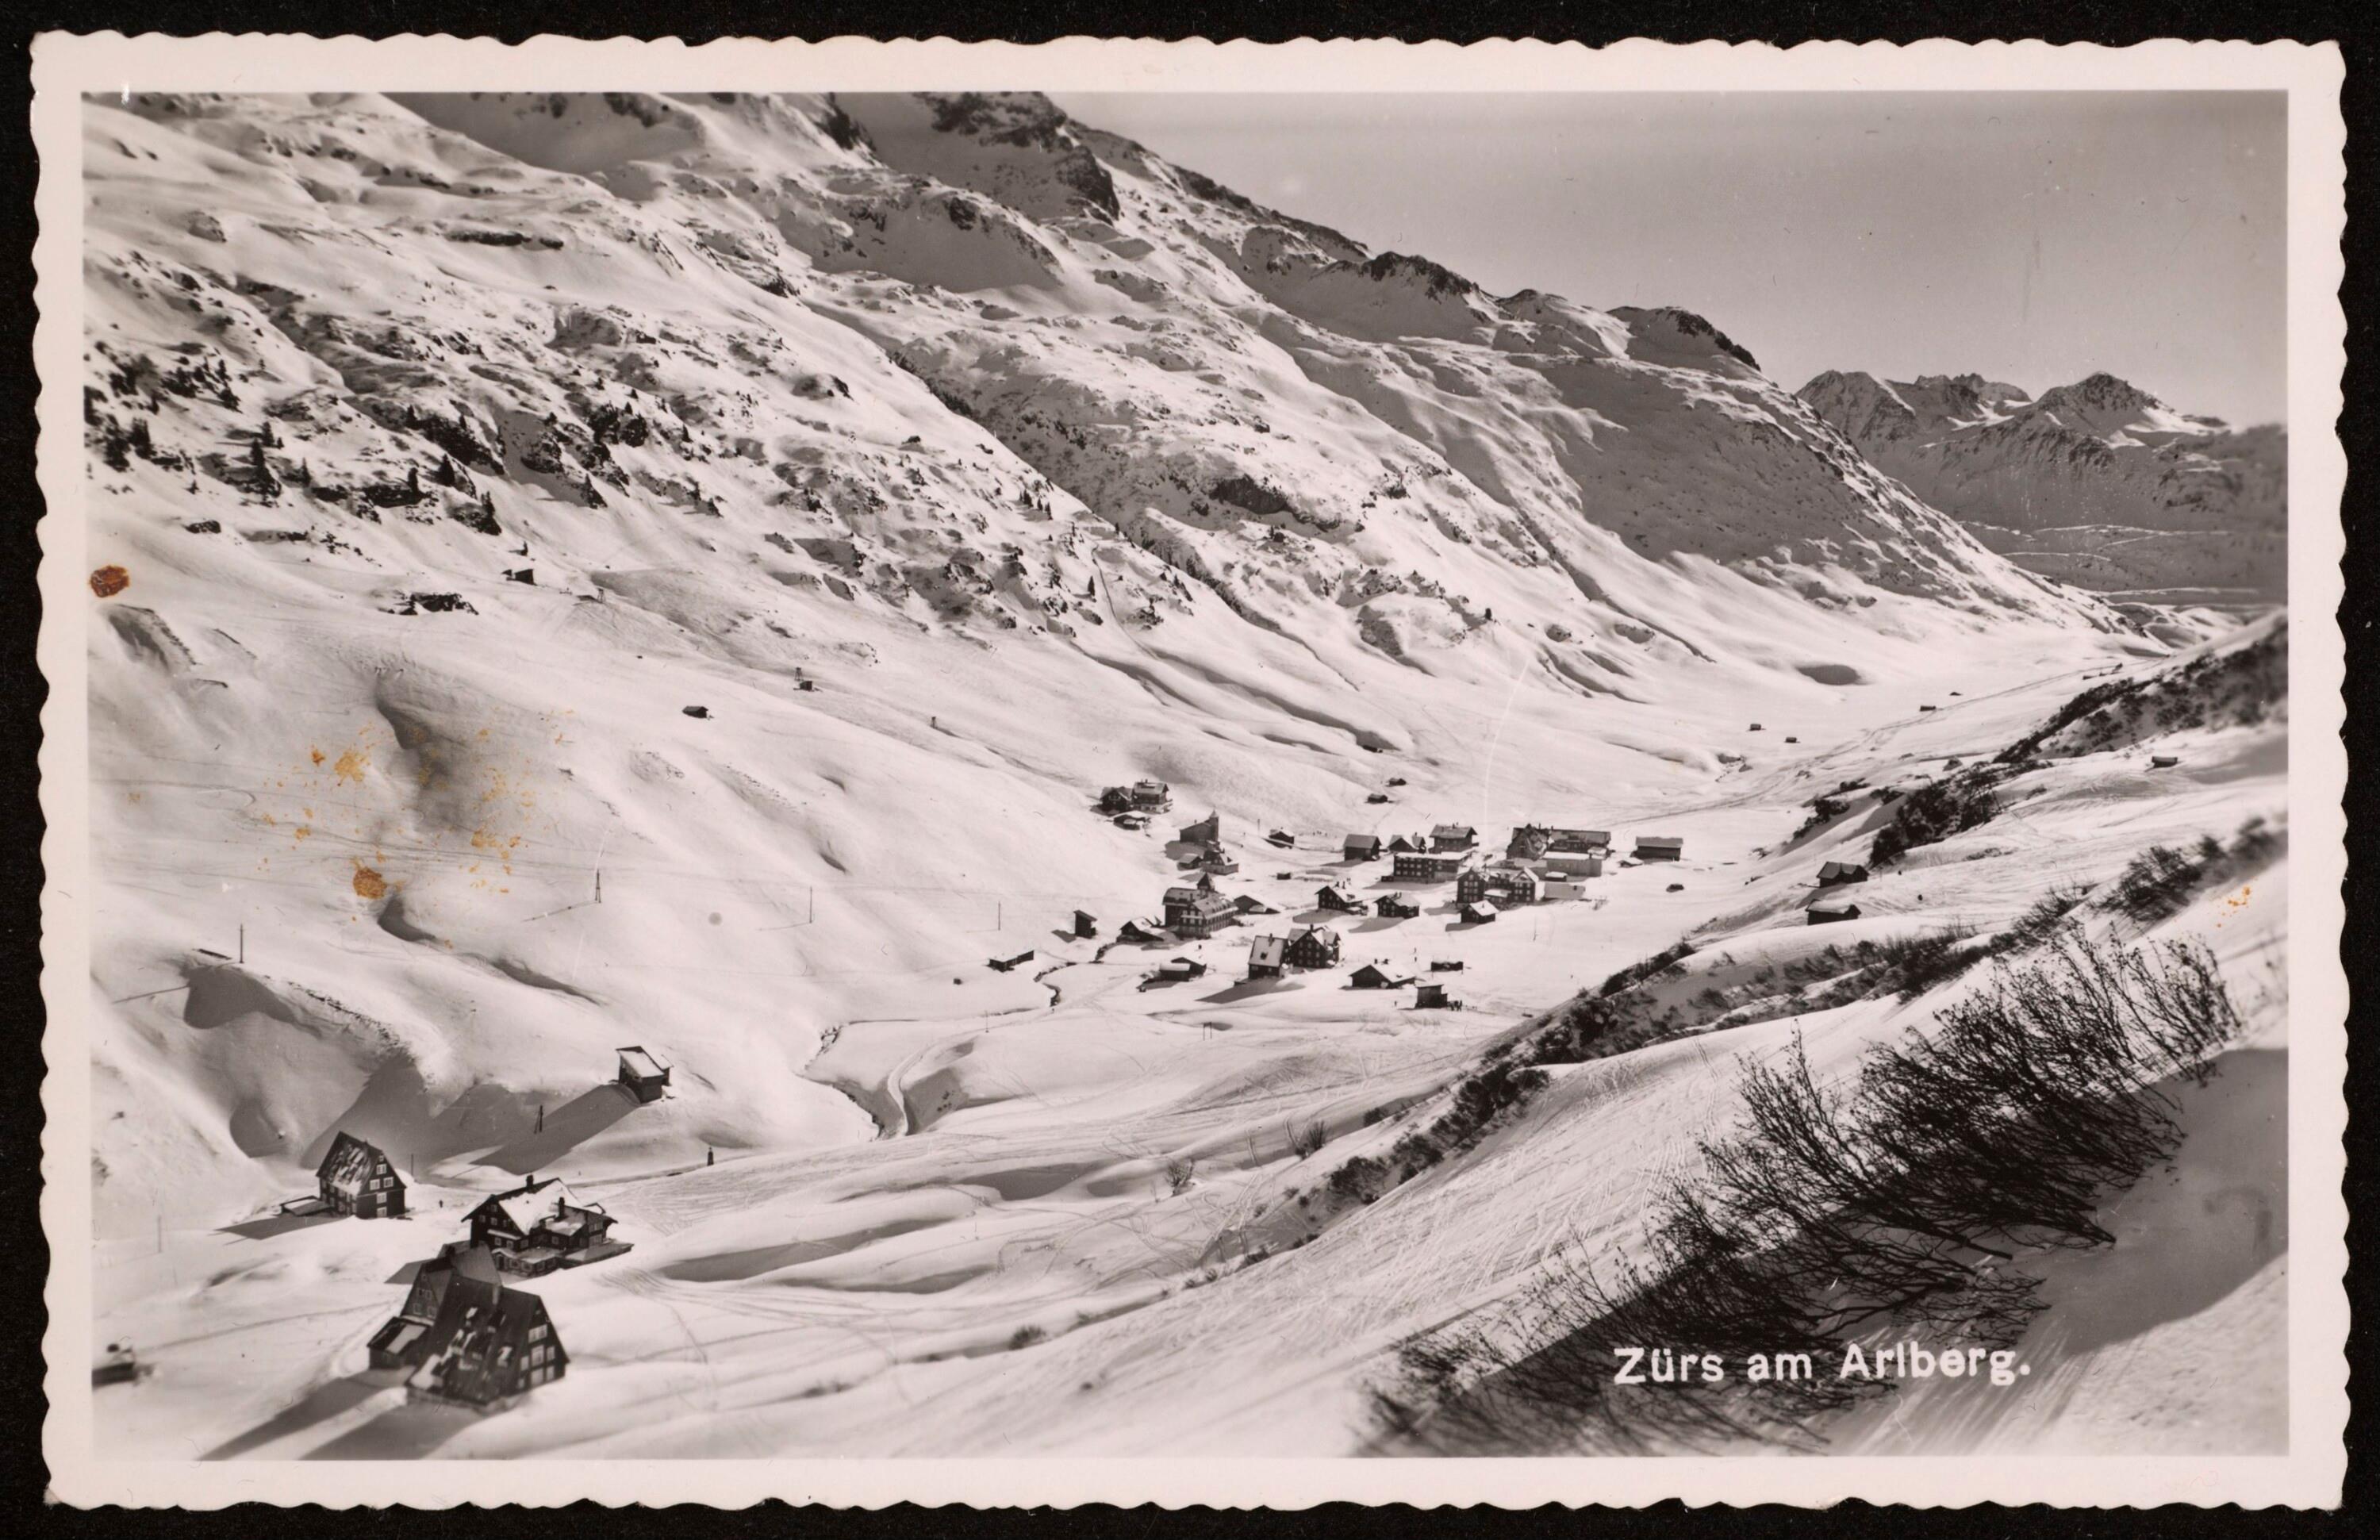 [Lech] Zürs am Arlberg></div>


    <hr>
    <div class=